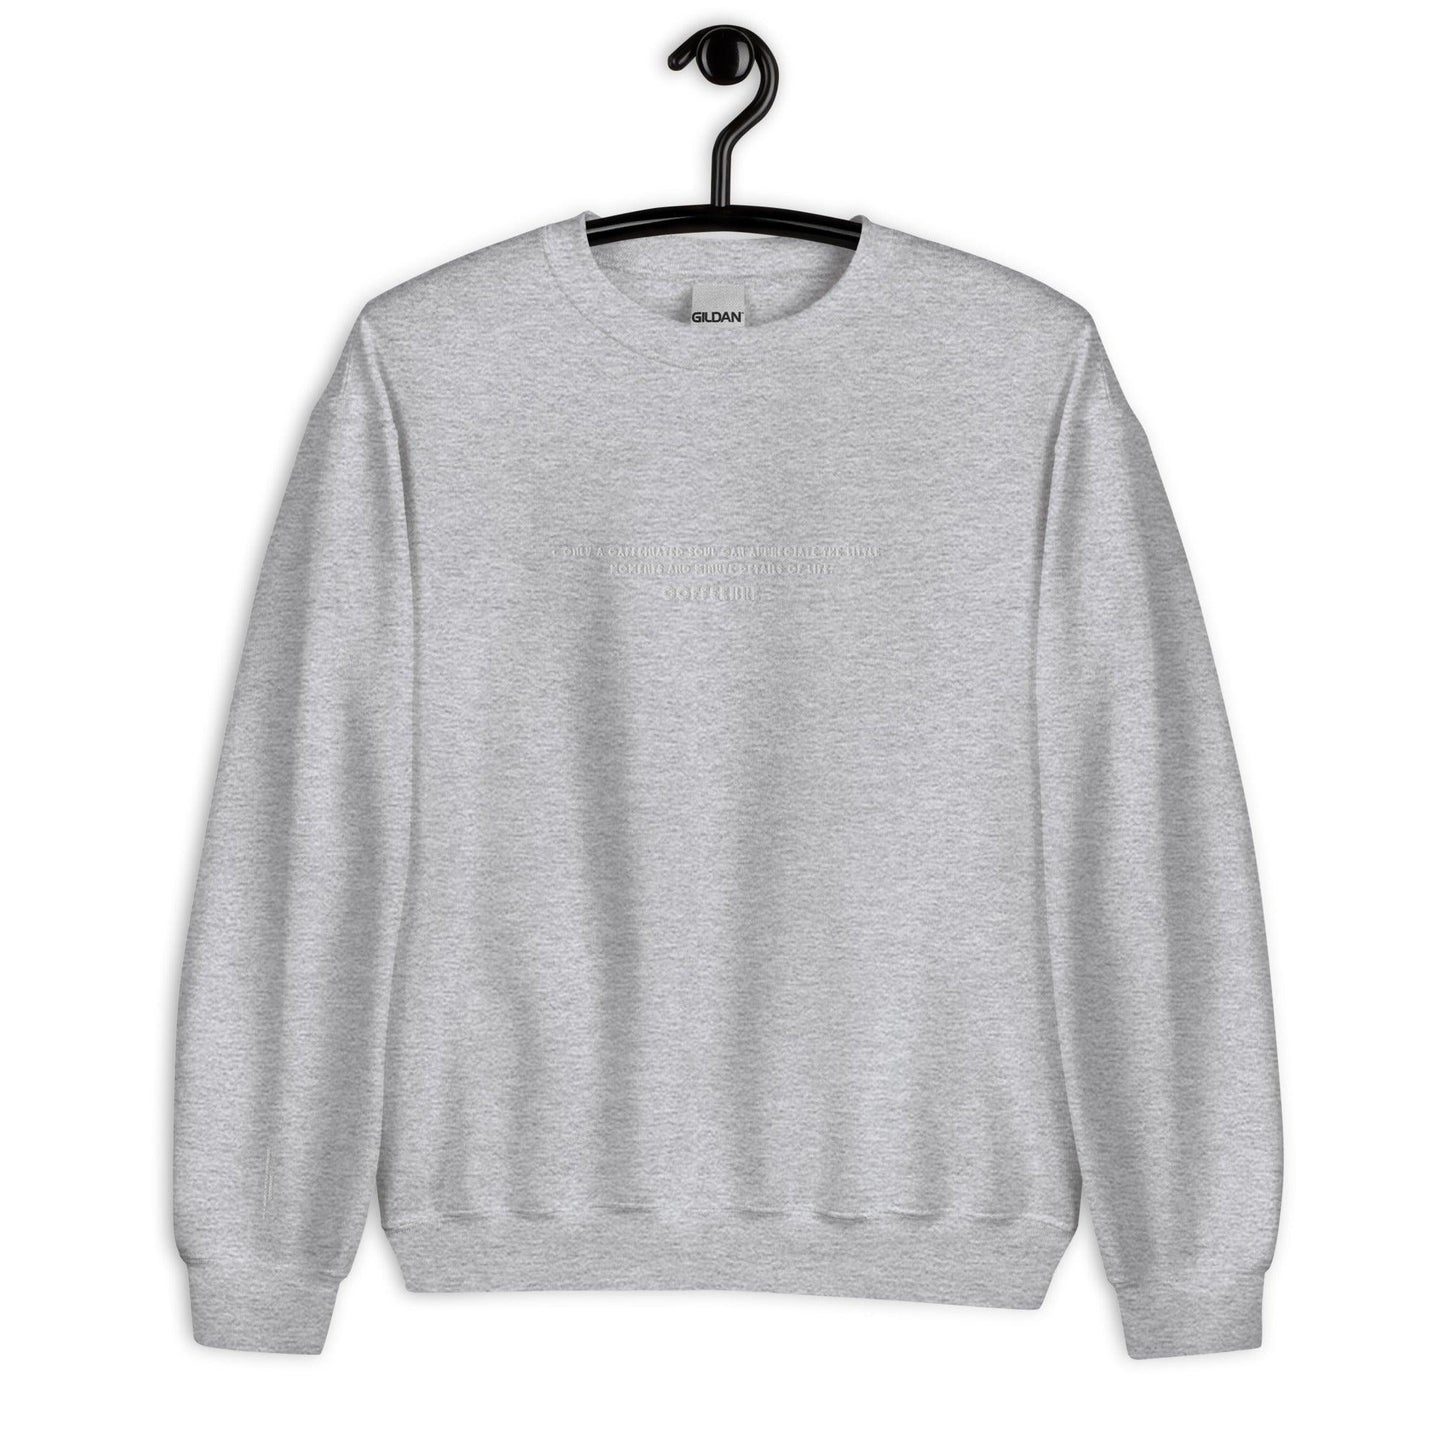 Embroidered Unisex Yoga Sweatshirt - COFFEEBRE